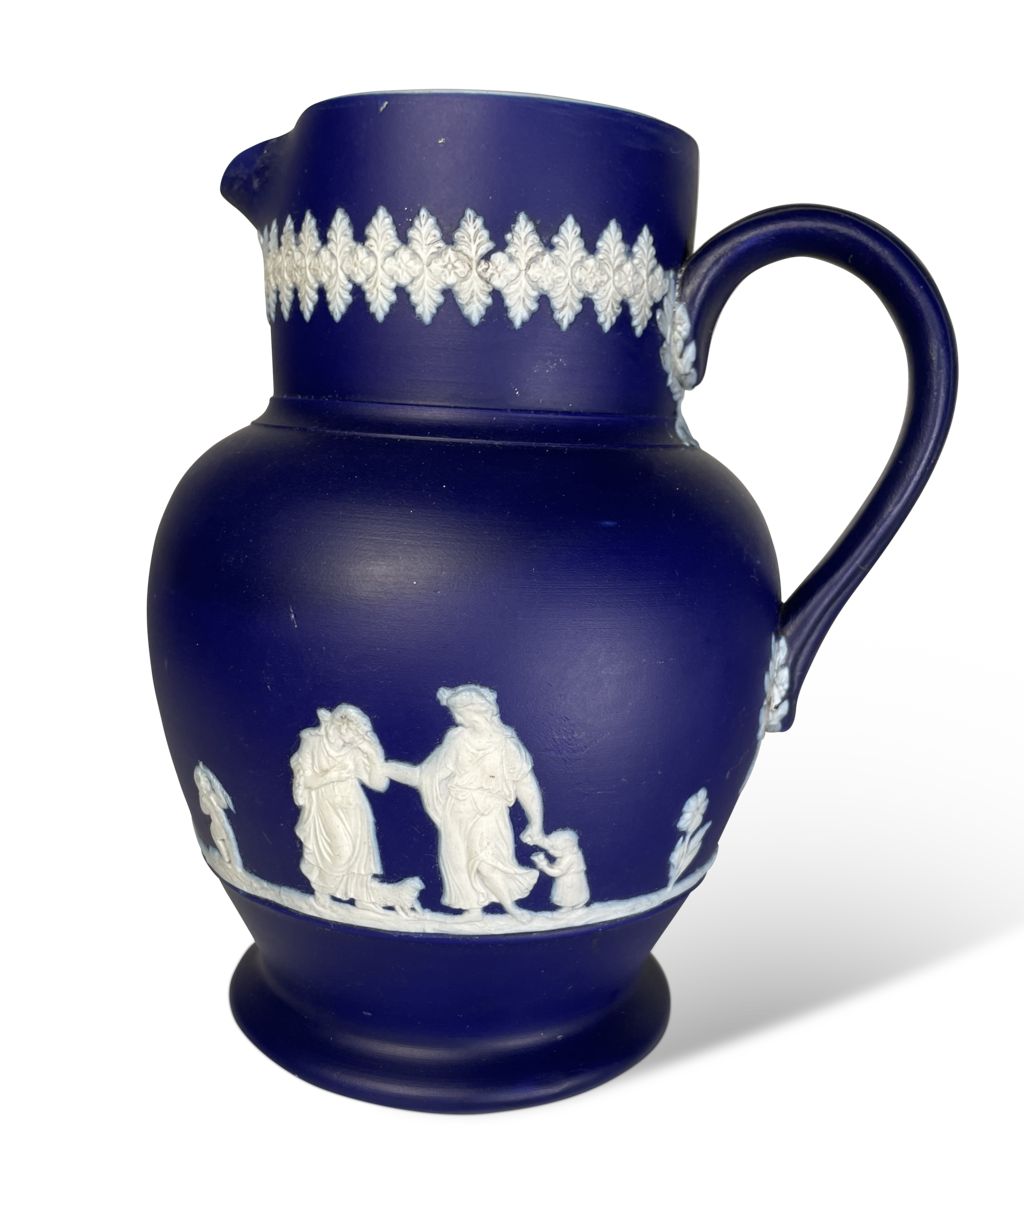 Cobalt Blue Jasperware Style Jug by Dudson Brothers of Hanley Potteries